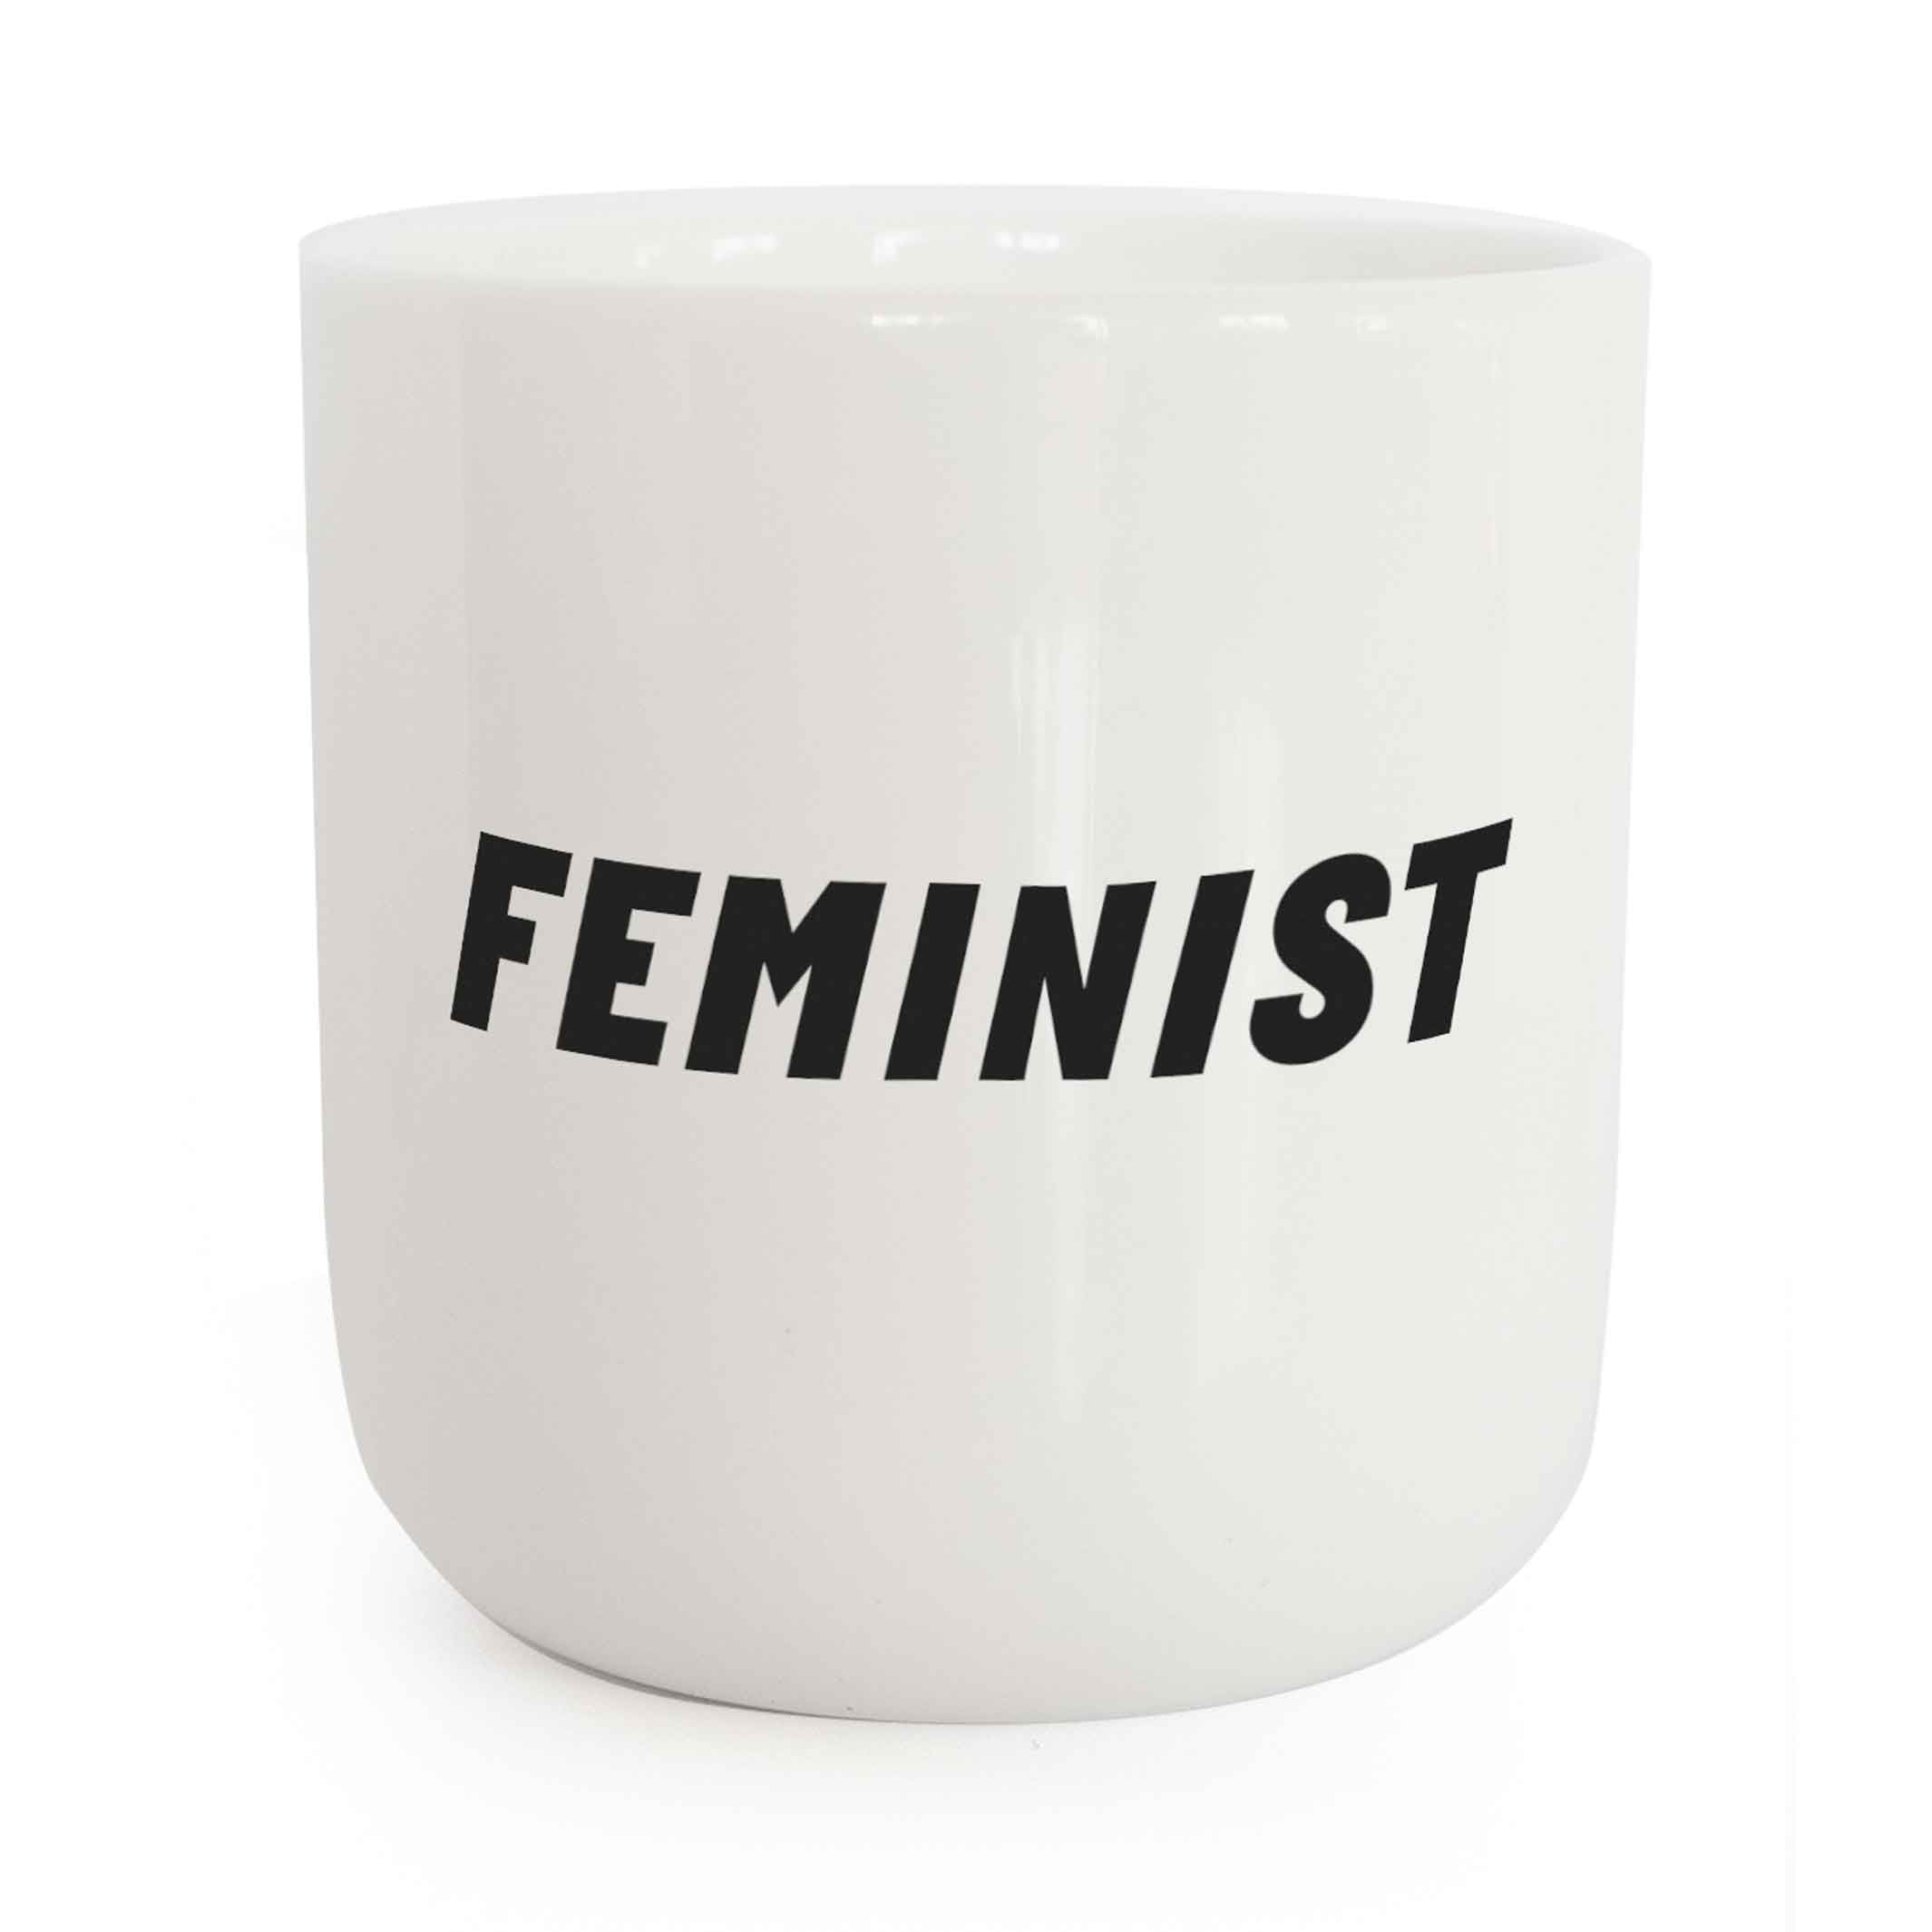 FEMINIST | weisser Kaffee- & Tee-BECHER mit schwarzer Typo | Attitude Serie | PLTY